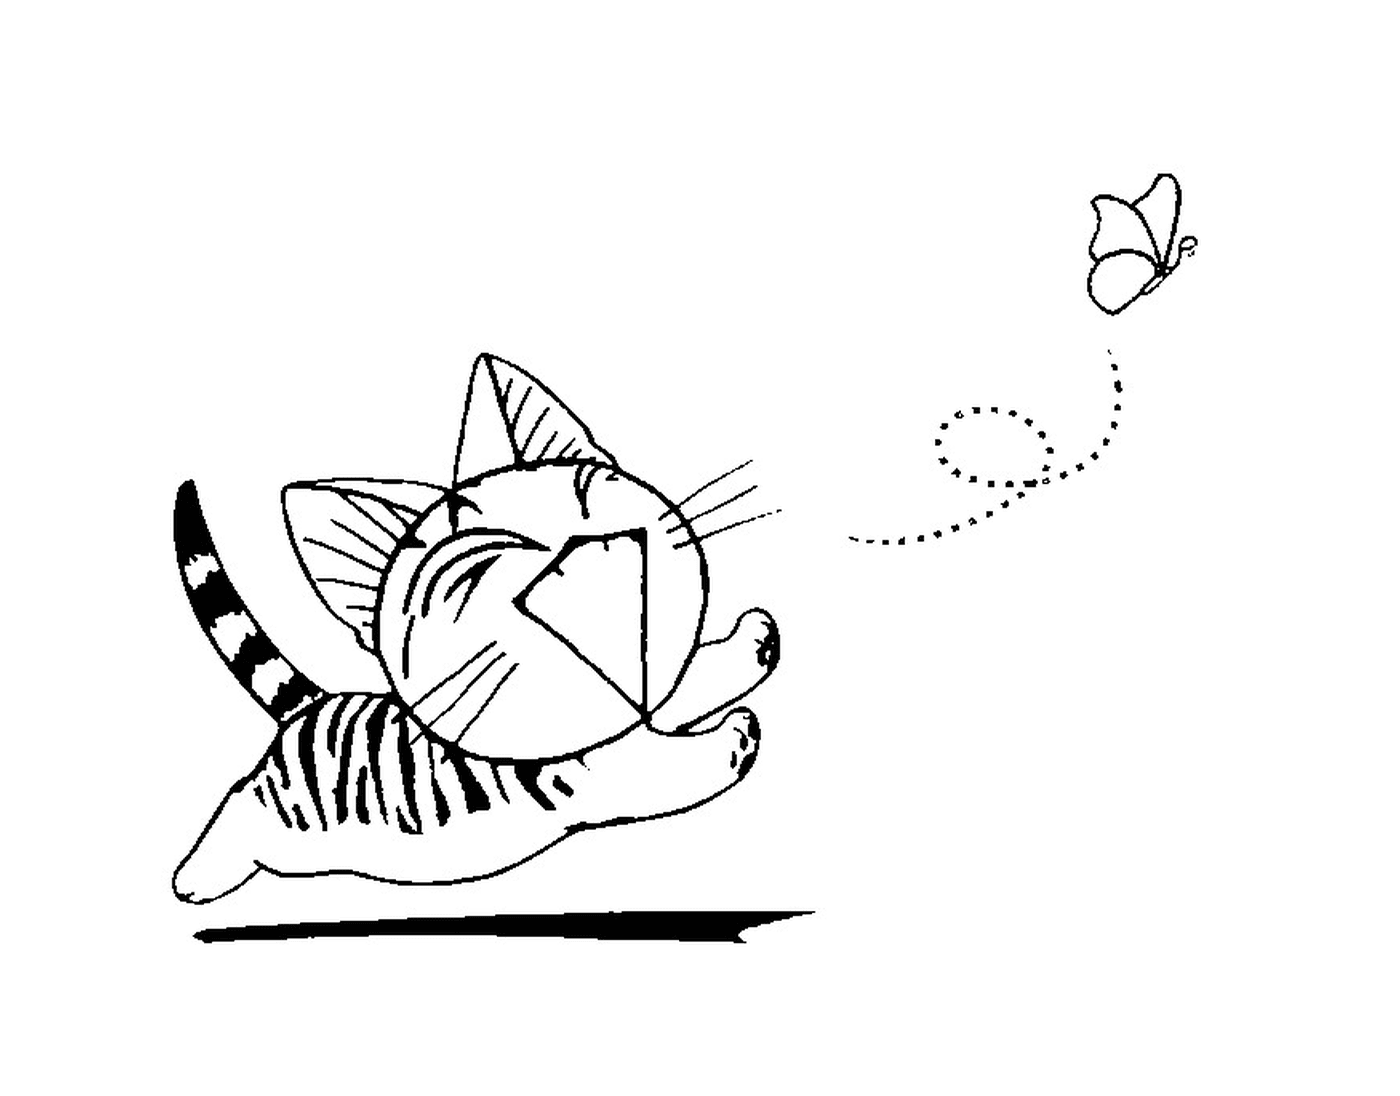  Китайская кошка бегает за бабочкой 